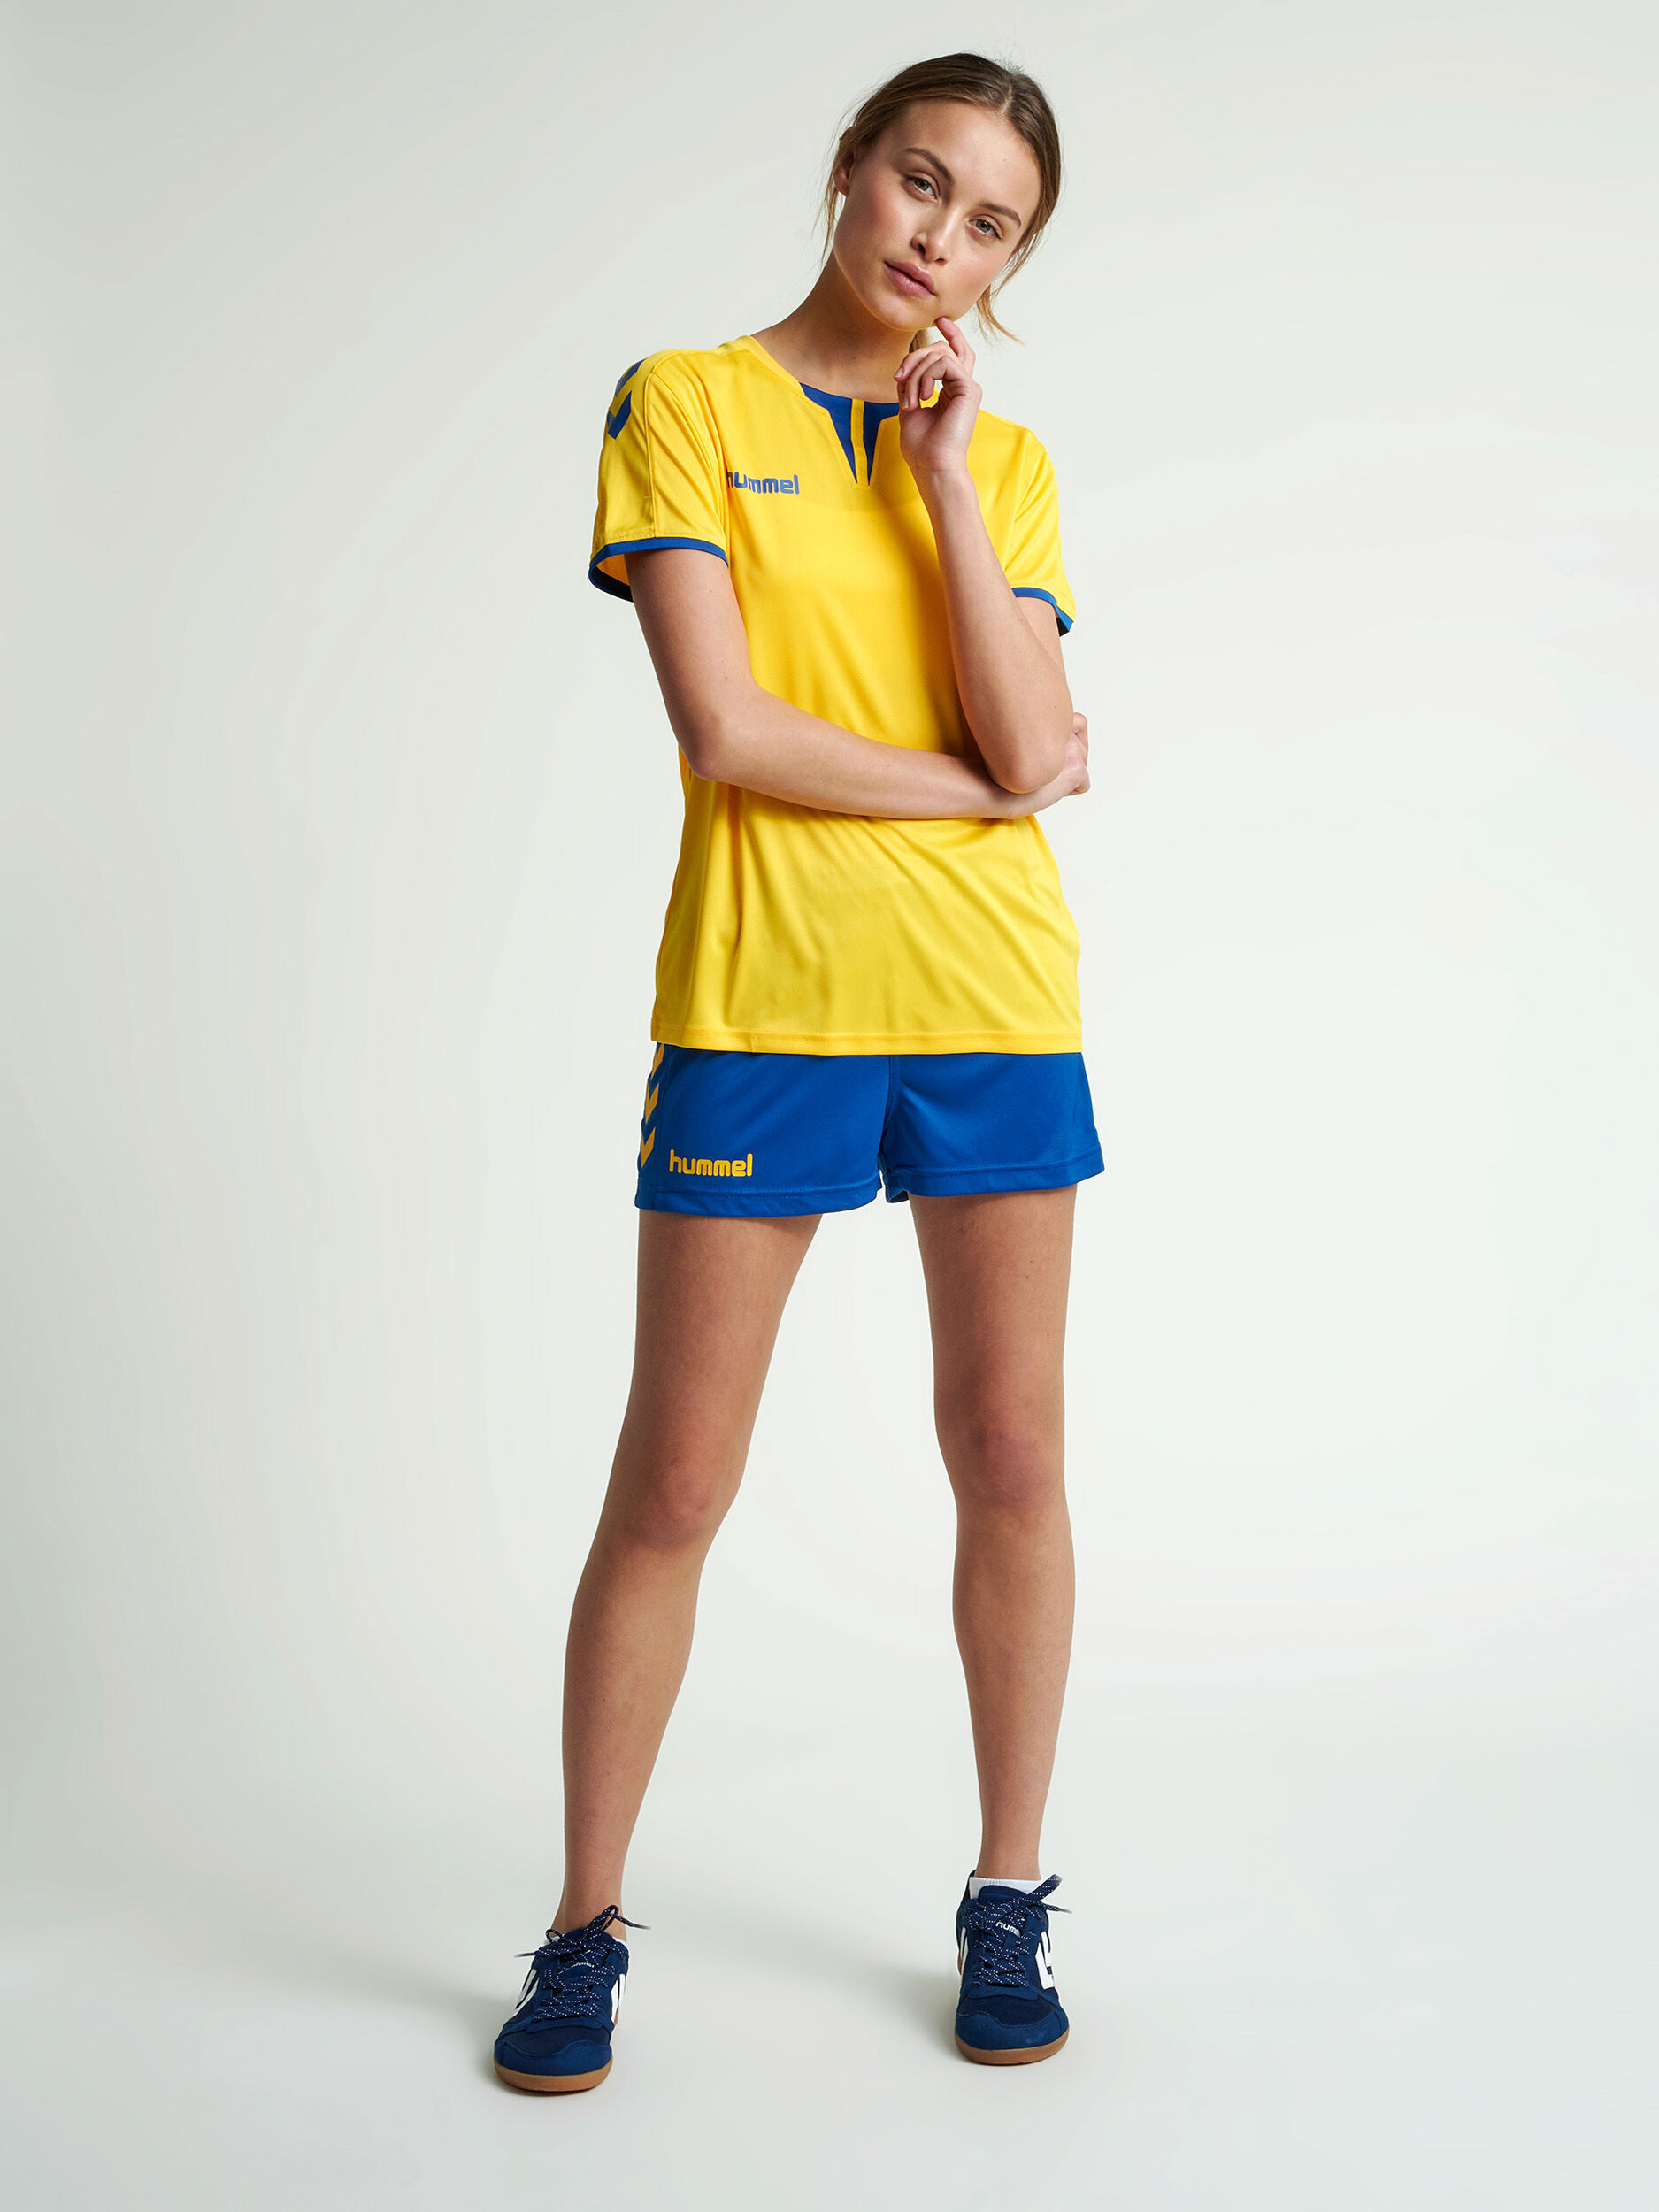 Details about   Hummel Core Womens Football Sports Training Workout Short Sleeve SS Jersey Shirt